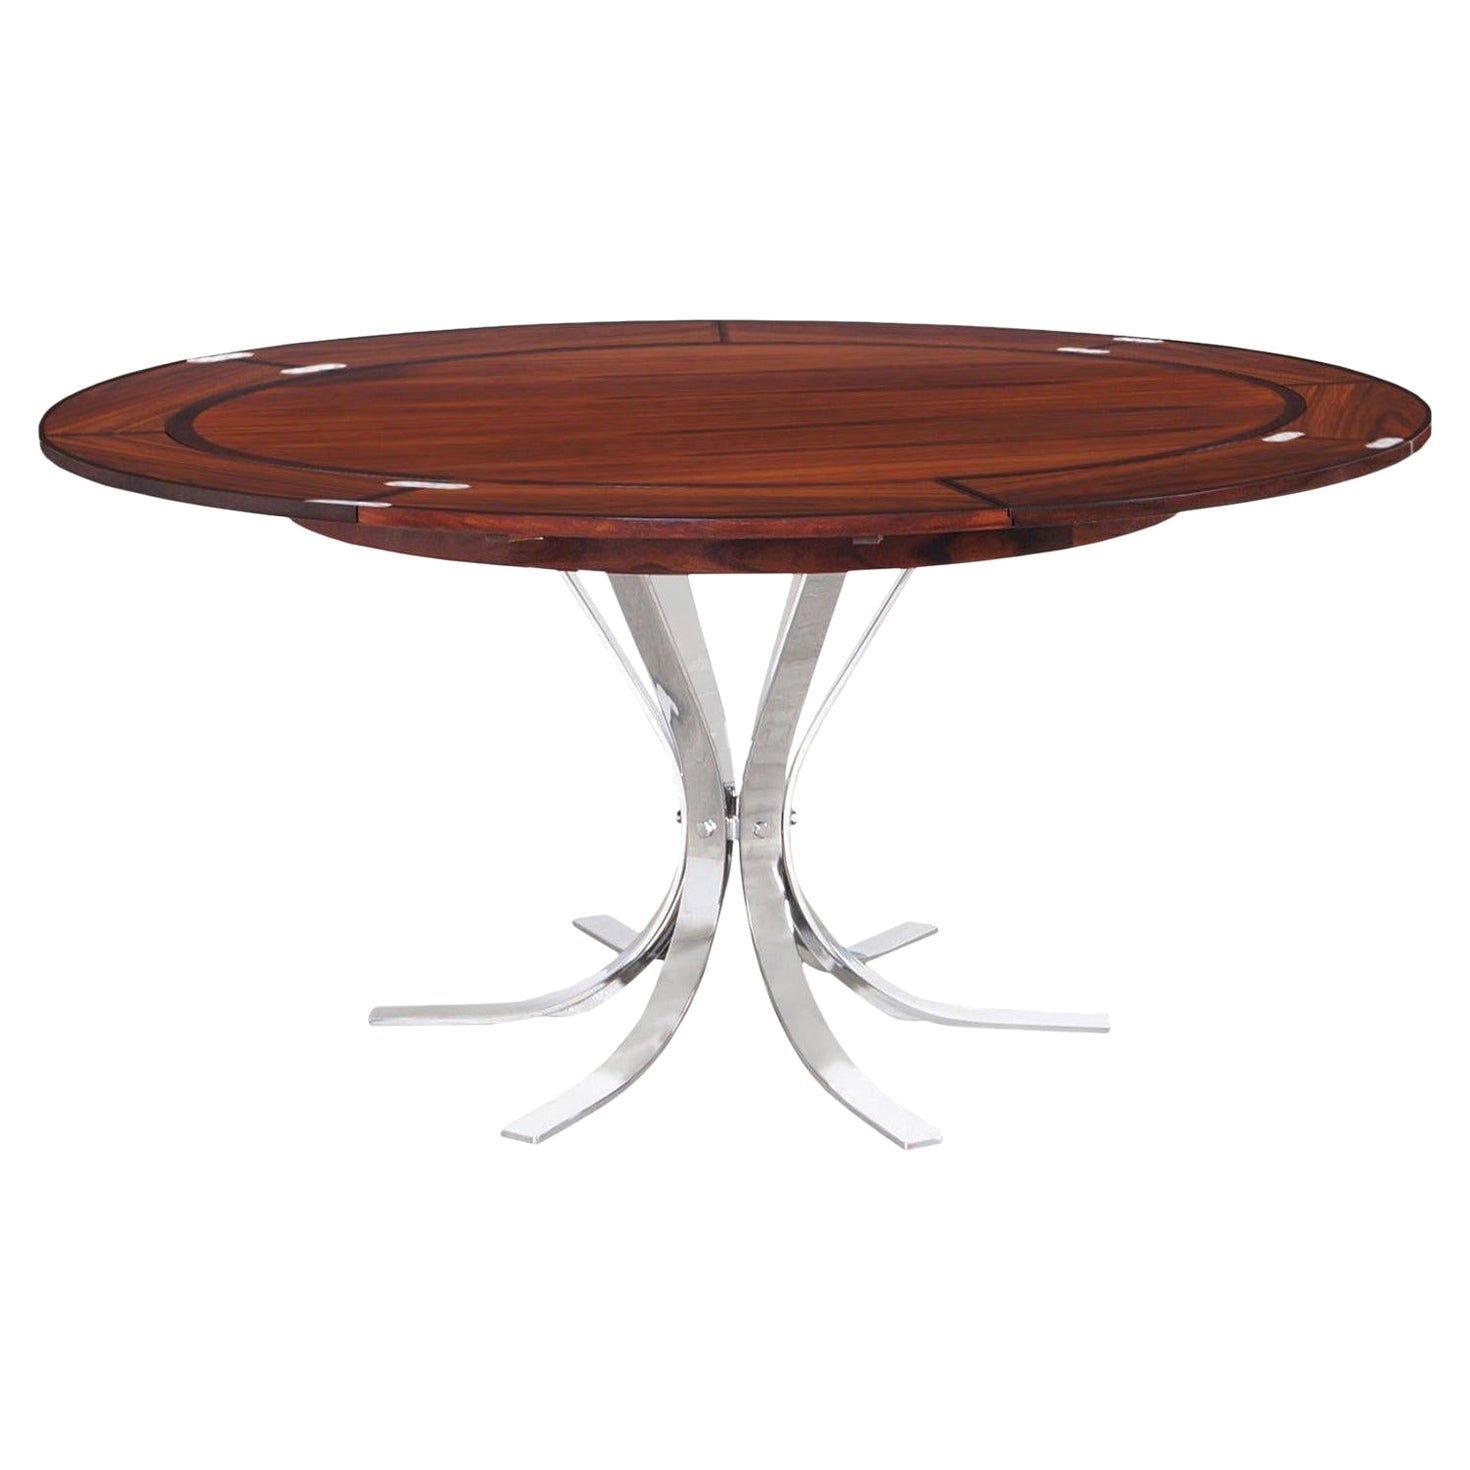 Danish Modern Rosewood "Flip-Flap" Dining Table by Dyrlund